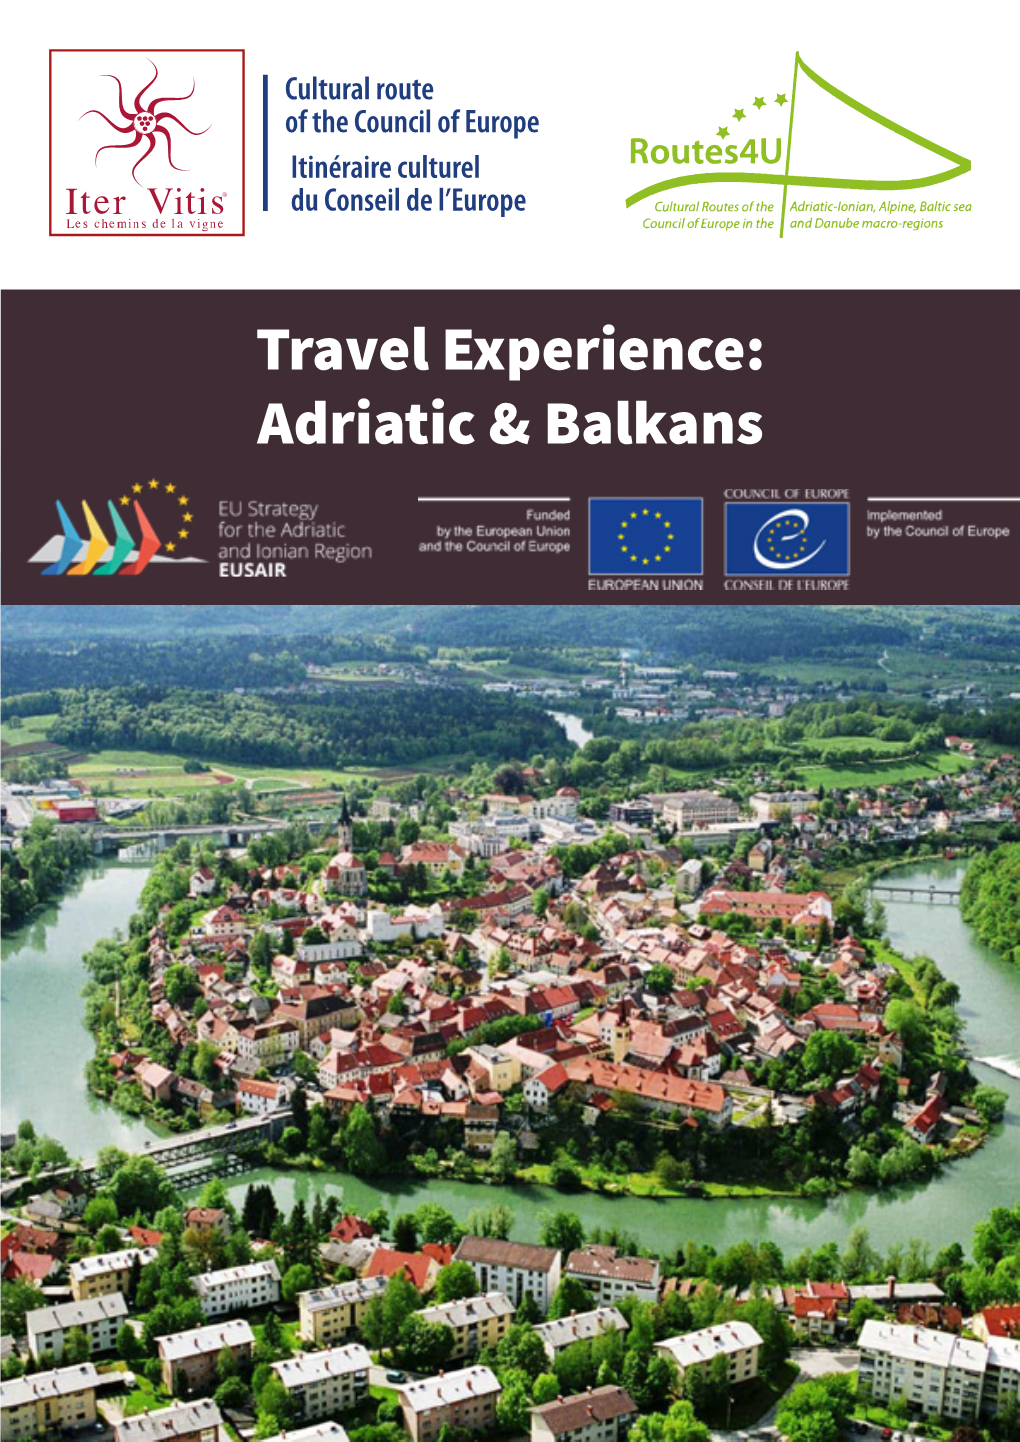 Adriatic & Balkans